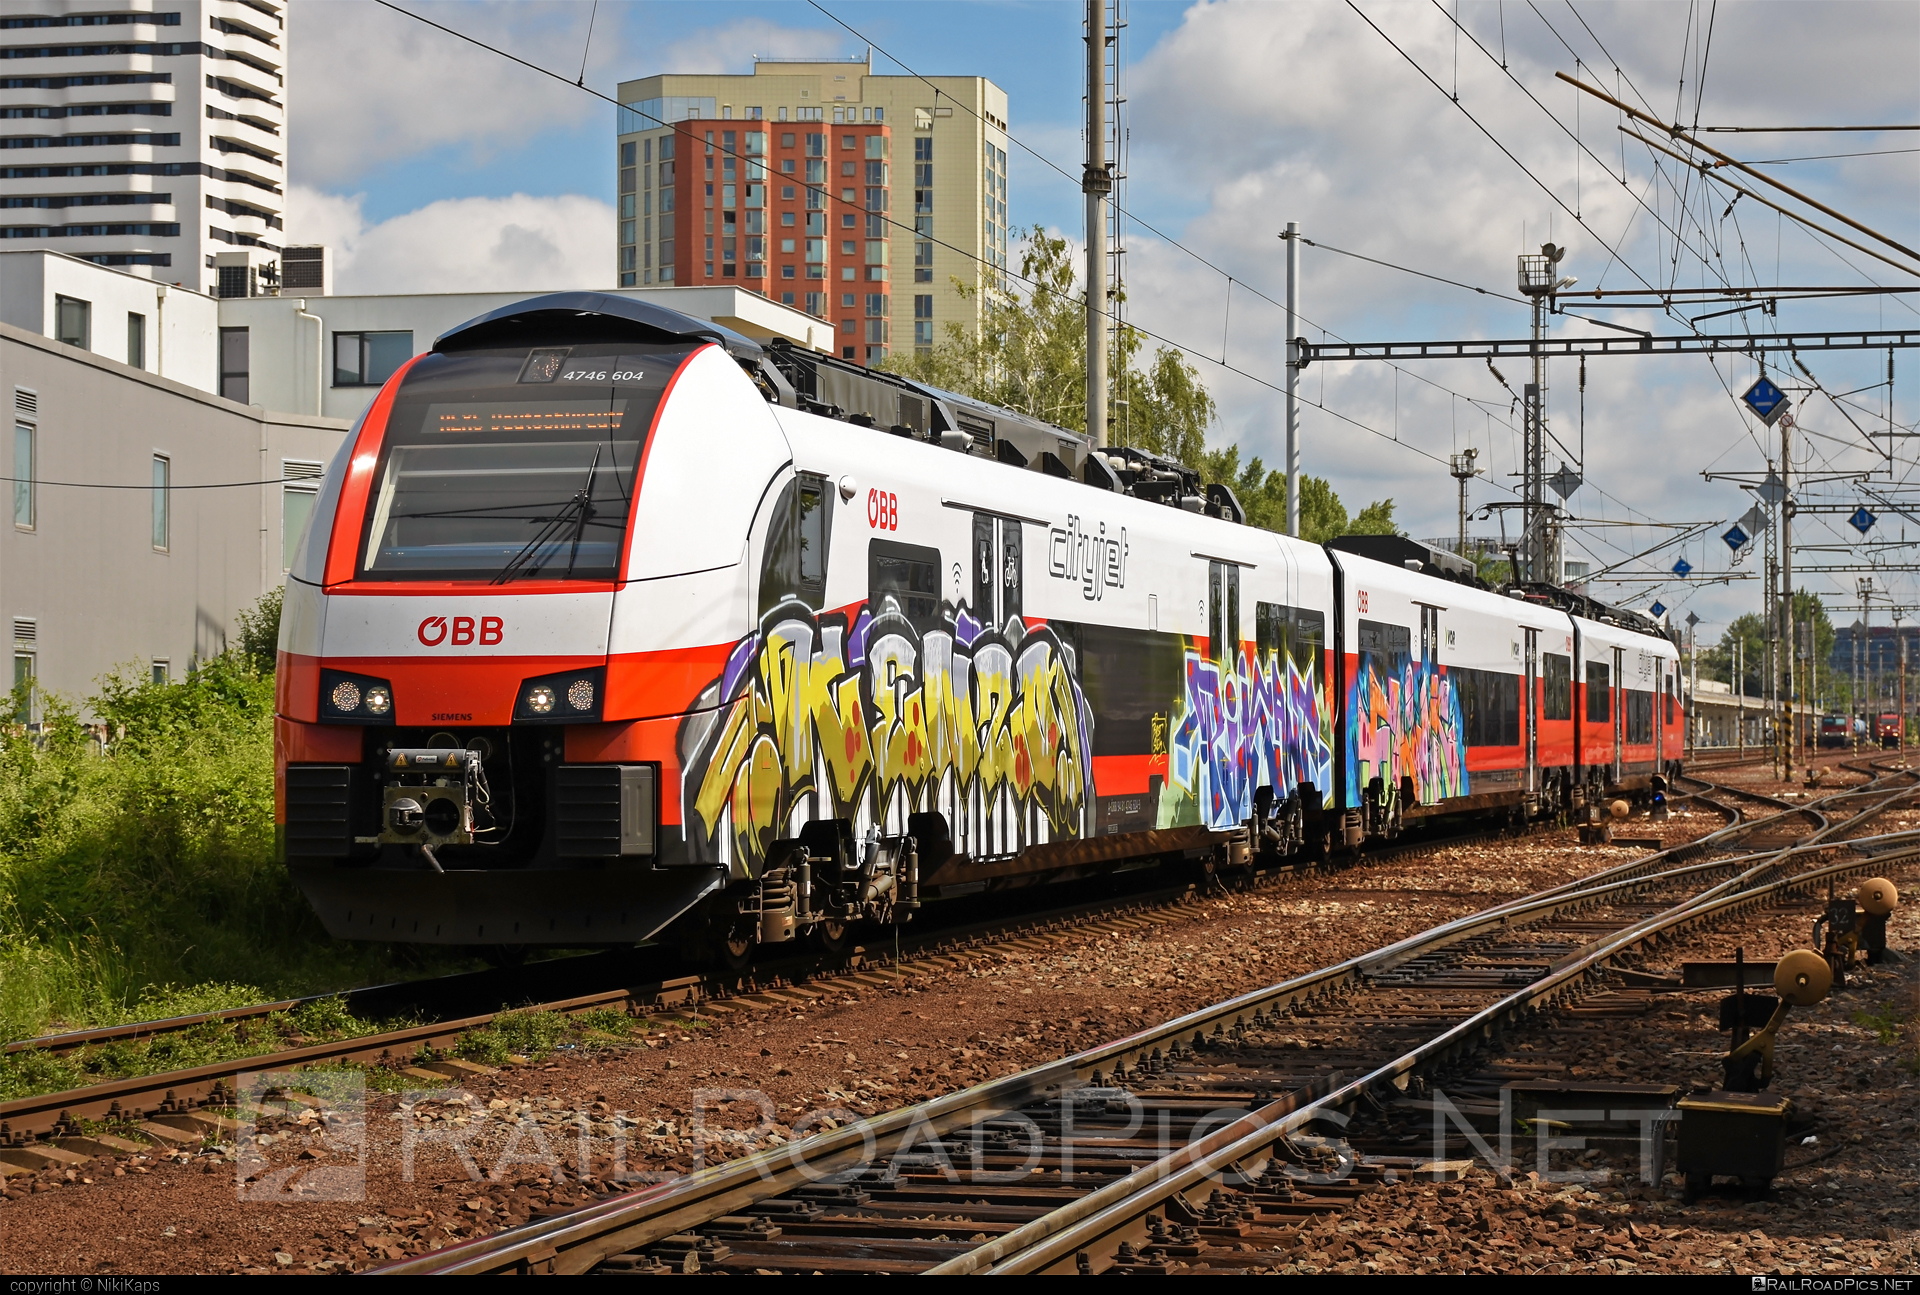 Siemens Desiro ML - 4746 604 operated by Österreichische Bundesbahnen #cityjet #desiro #desiroml #graffiti #obb #obbcityjet #osterreichischebundesbahnen #siemens #siemensdesiro #siemensdesiroml